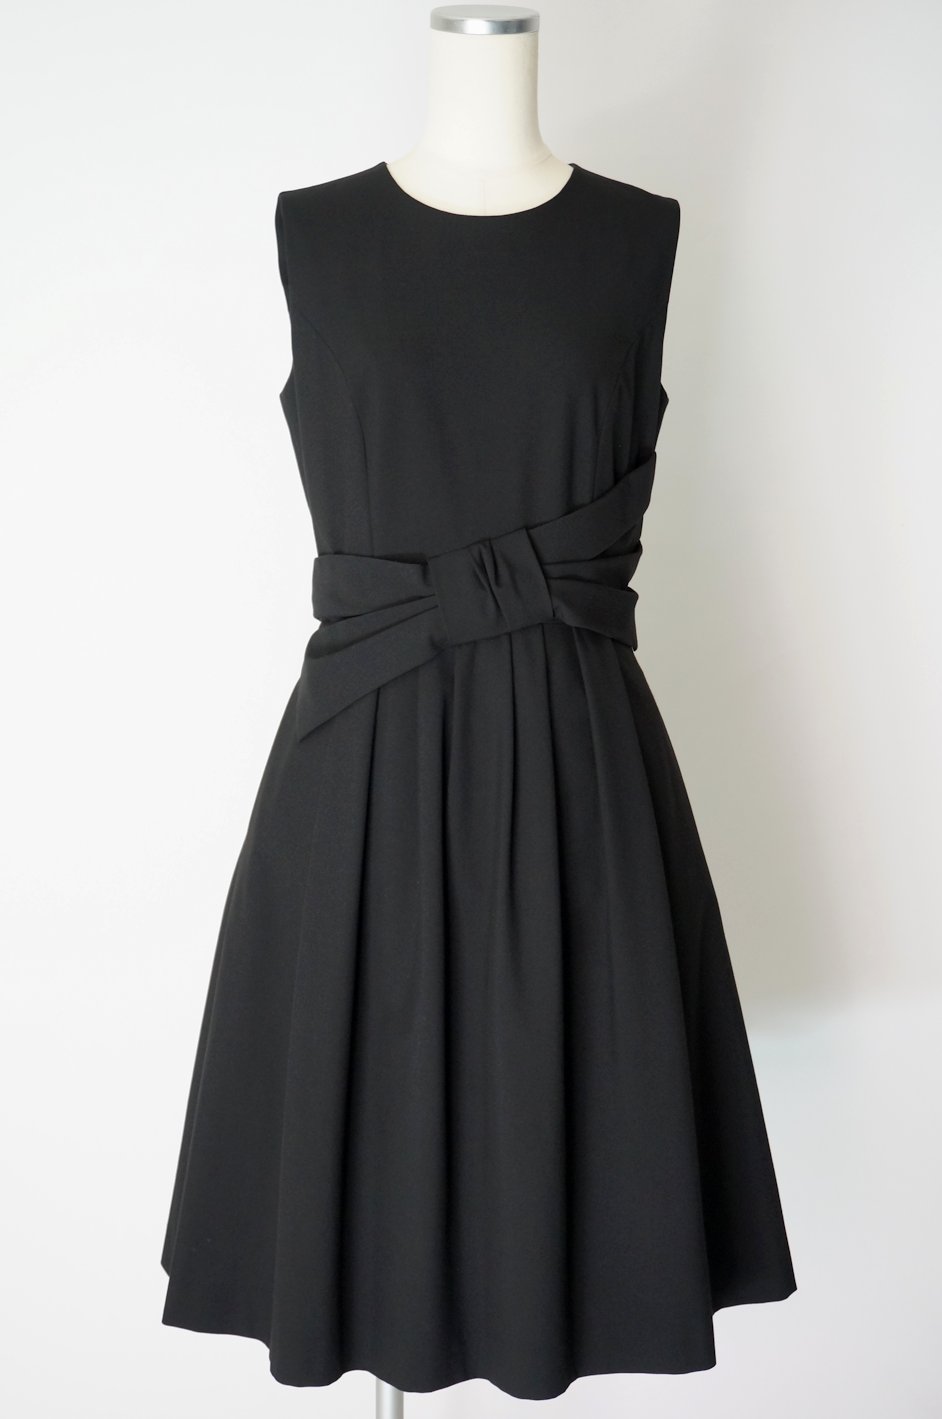 フォクシー サッシュベルトデザインのドレス ブラック40 / レンタルリトルブラックドレス テン Rental Little Black